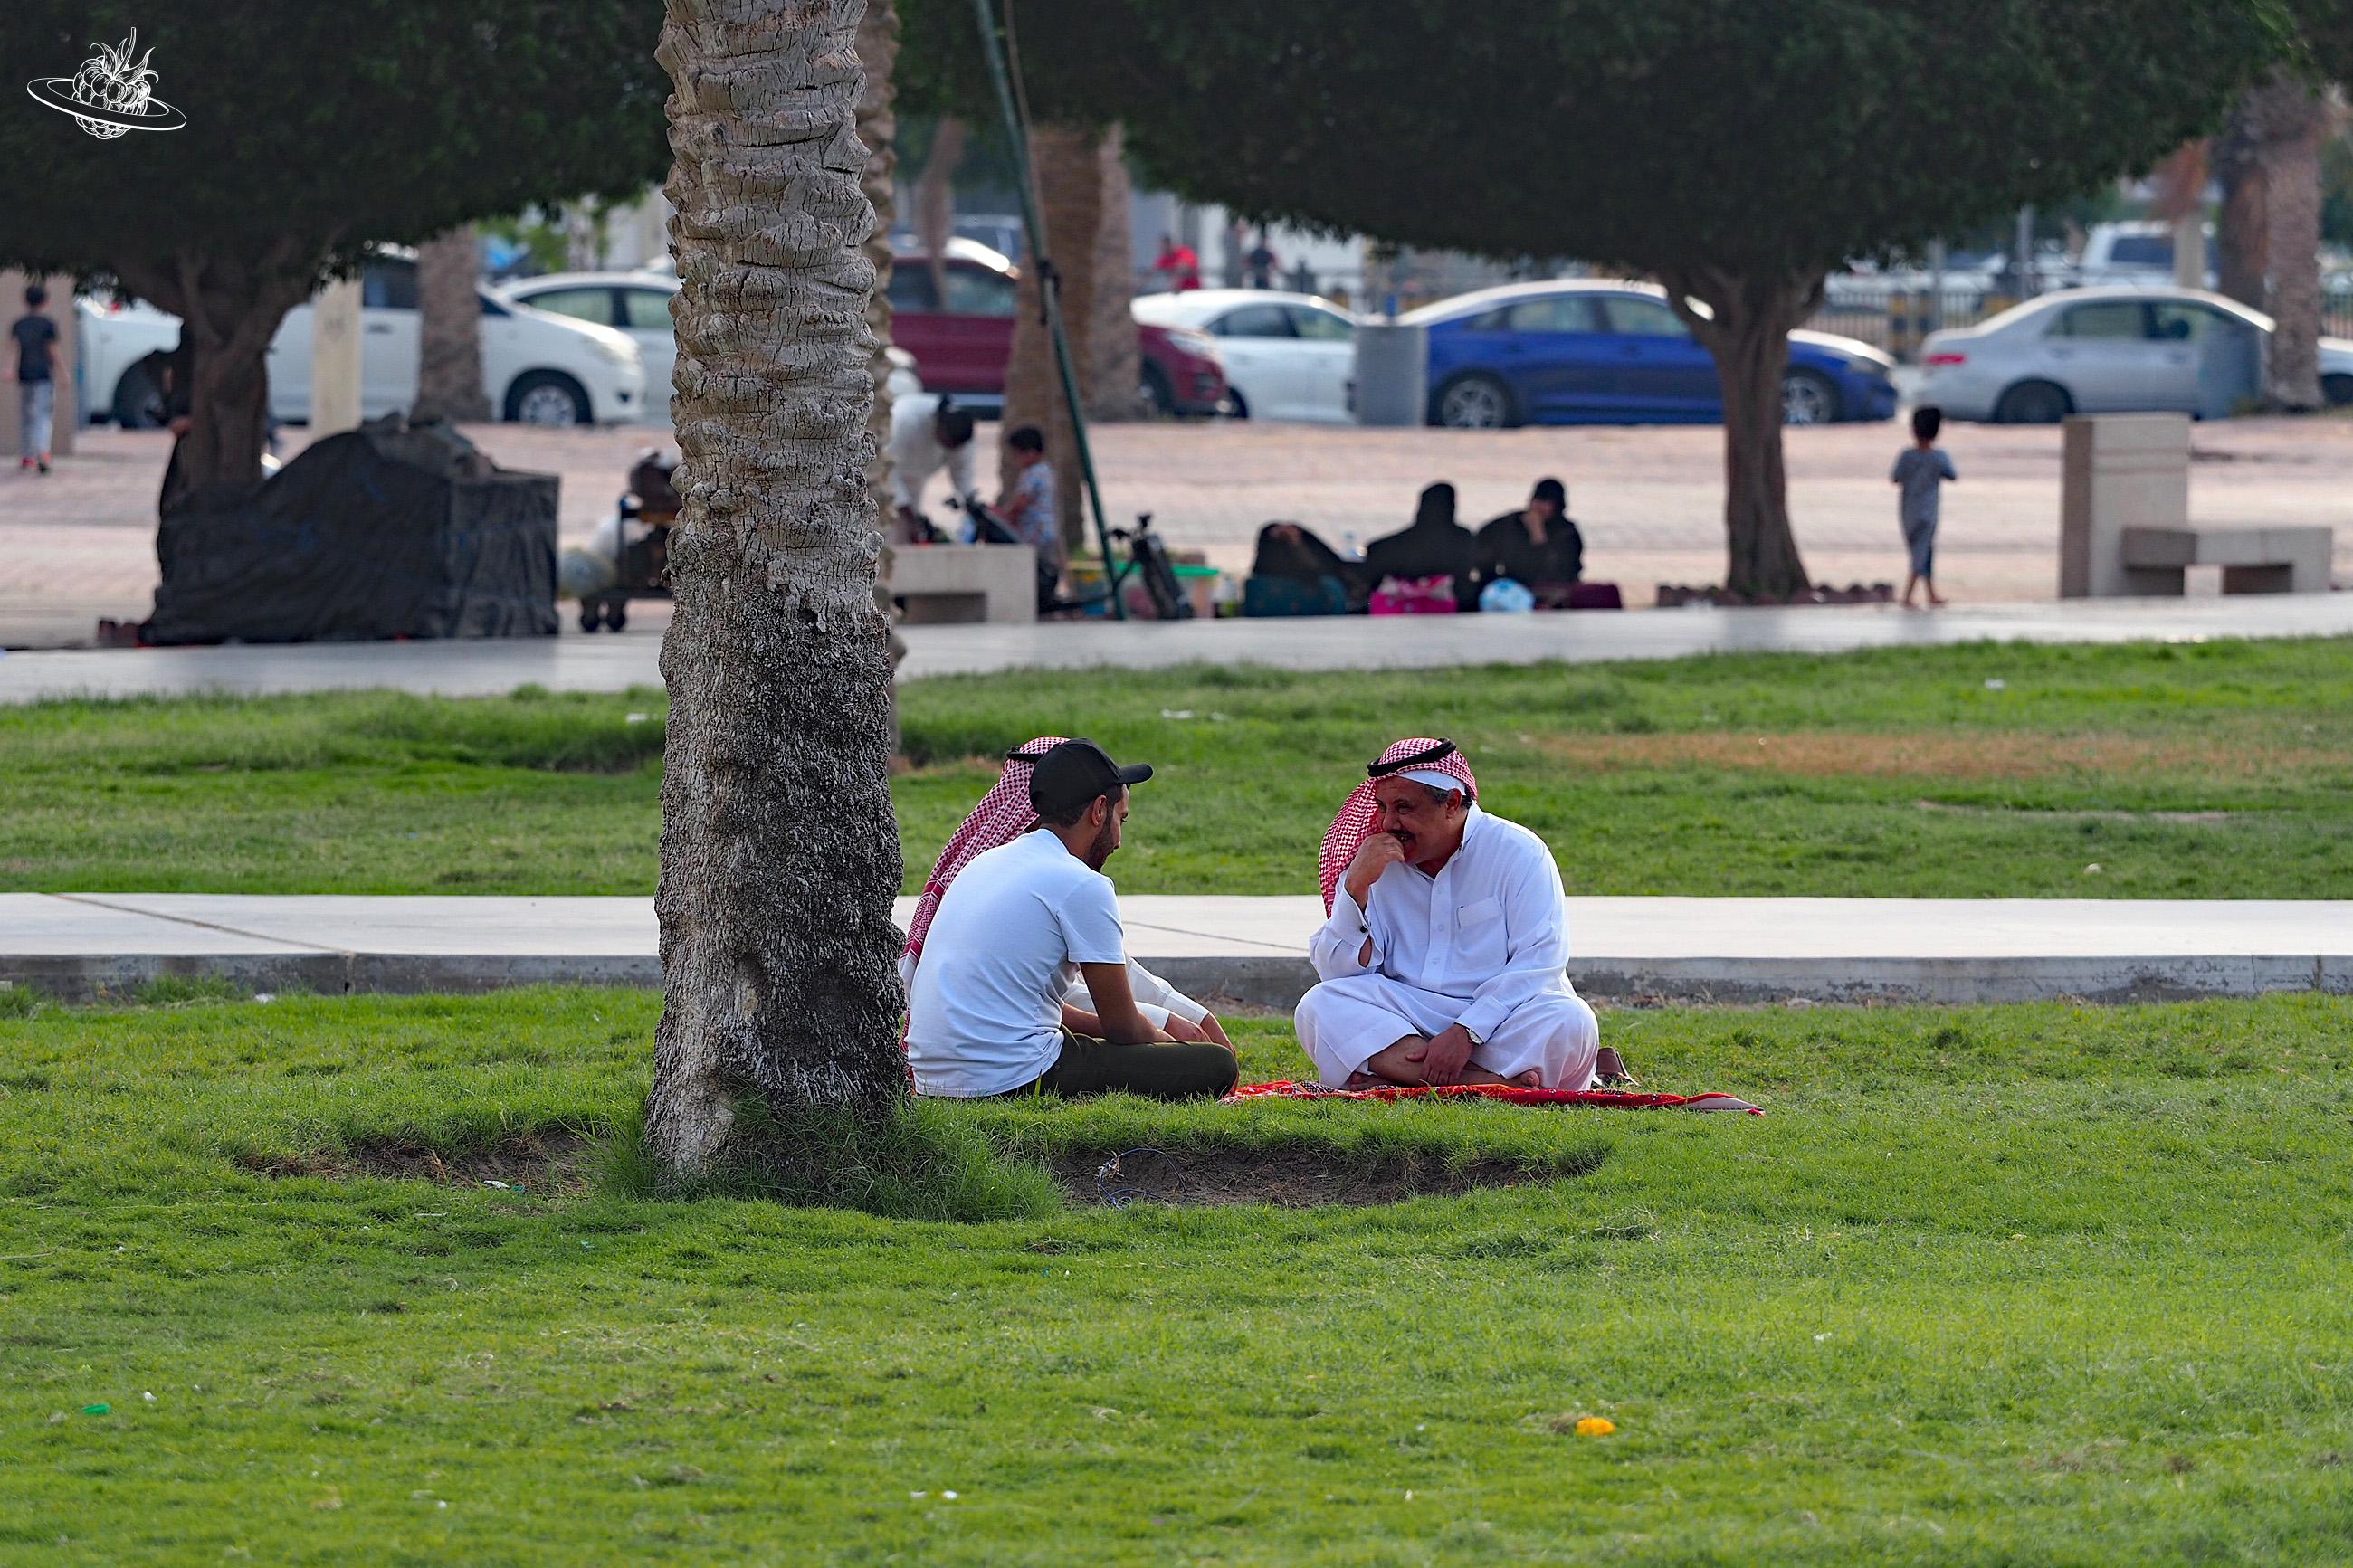 Picknicken in Saudi Arabien